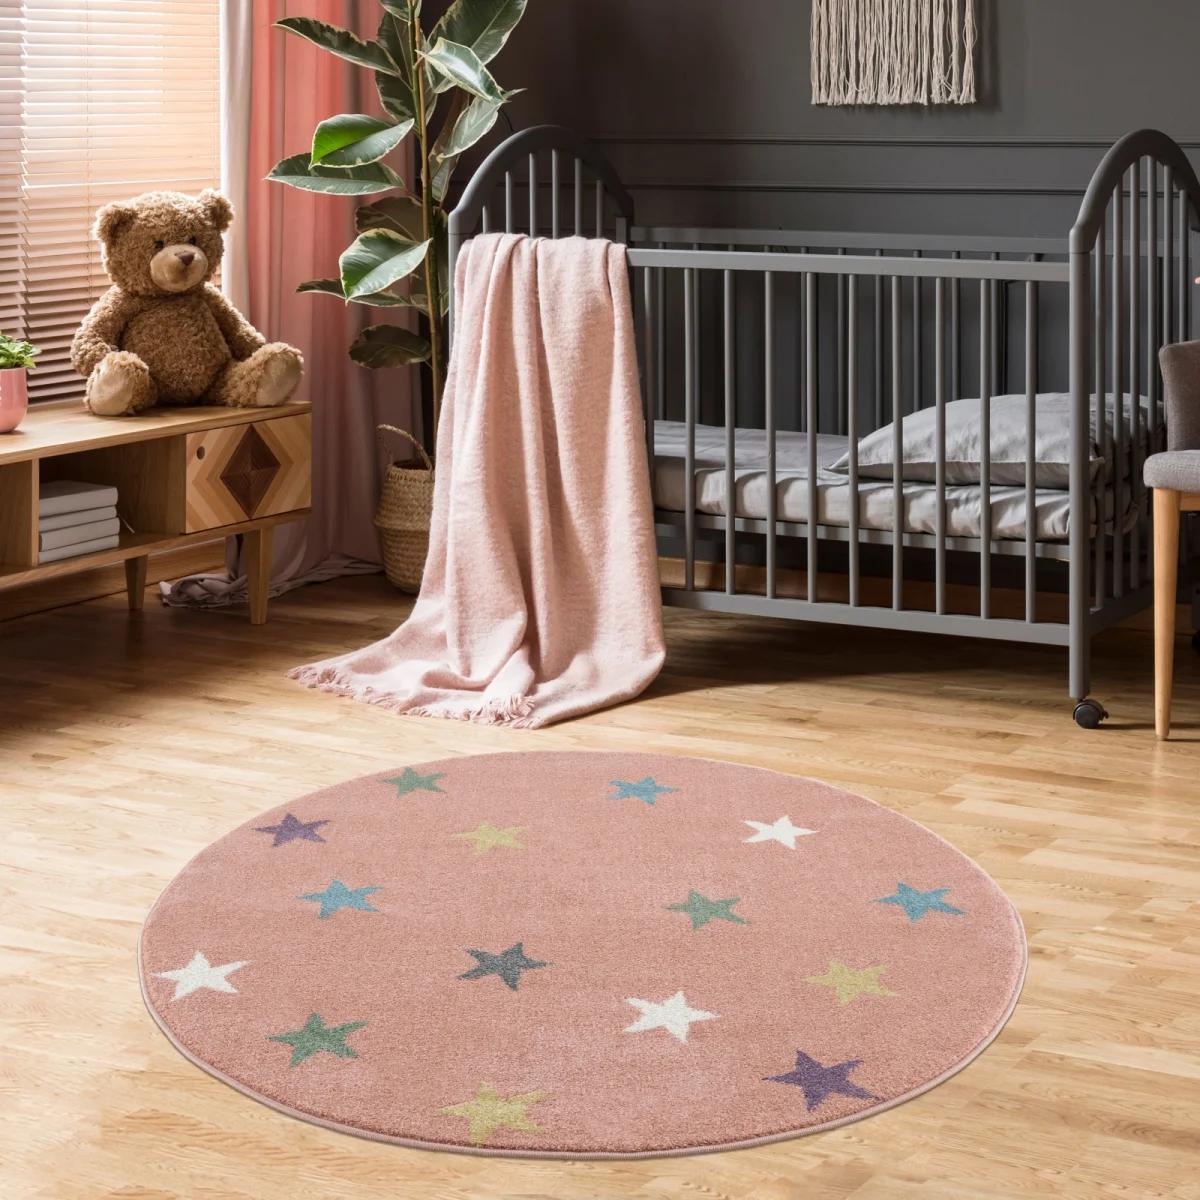 Dywan dziecięcy okrągły Pink Stars Round 133 cm do pokoju dziecięcego różowy w gwiazdki nr. 1